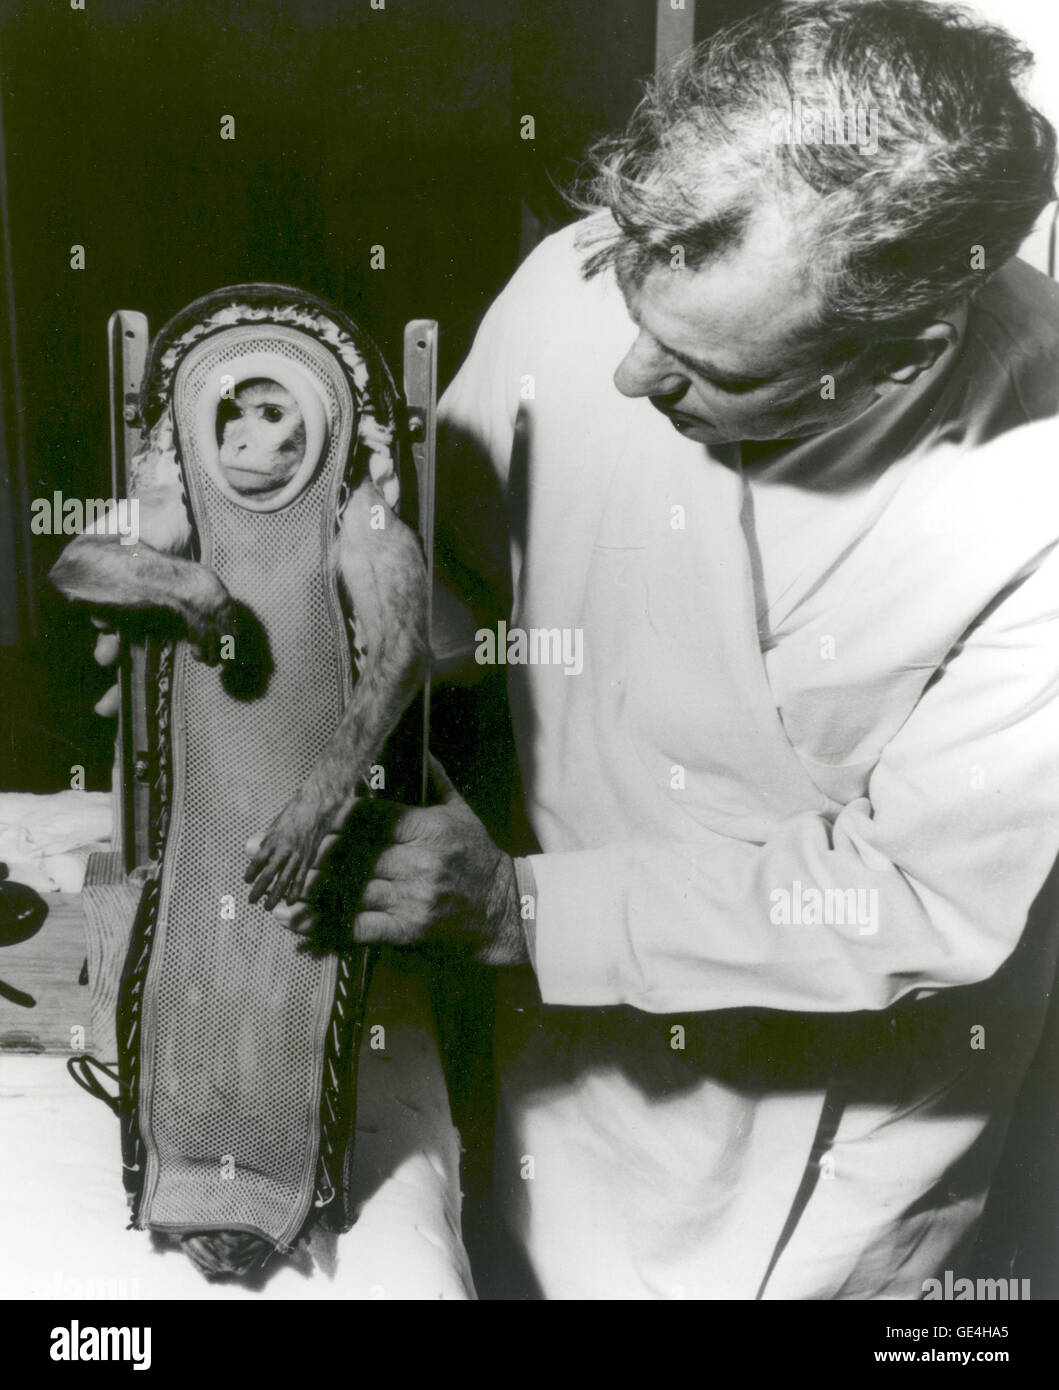 (4 dicembre 1959) Sam, la scimmia Rhesus, dopo la sua cavalcata in Little Joe-2 (LJ-2) veicolo spaziale. Un U.S. Navy destroyer recuperati in modo sicuro Sam dopo che egli ha sperimentato tre minuti di assenza di peso durante il volo. Gli animali sono stati spesso utilizzati durante i voli di collaudo per il progetto mercurio per contribuire a determinare gli effetti del volo spaziale e di assenza di peso sugli esseri umani. LJ-2 era uno di una serie di voli che ha portato fino alla umana voli orbitale della NASA il progetto programma di mercurio. Il Little Joe rocket booster è stato sviluppato come un modo meno costoso, più piccoli e più funzionale alternativa al Redstone razzi. Little Joe co Foto Stock